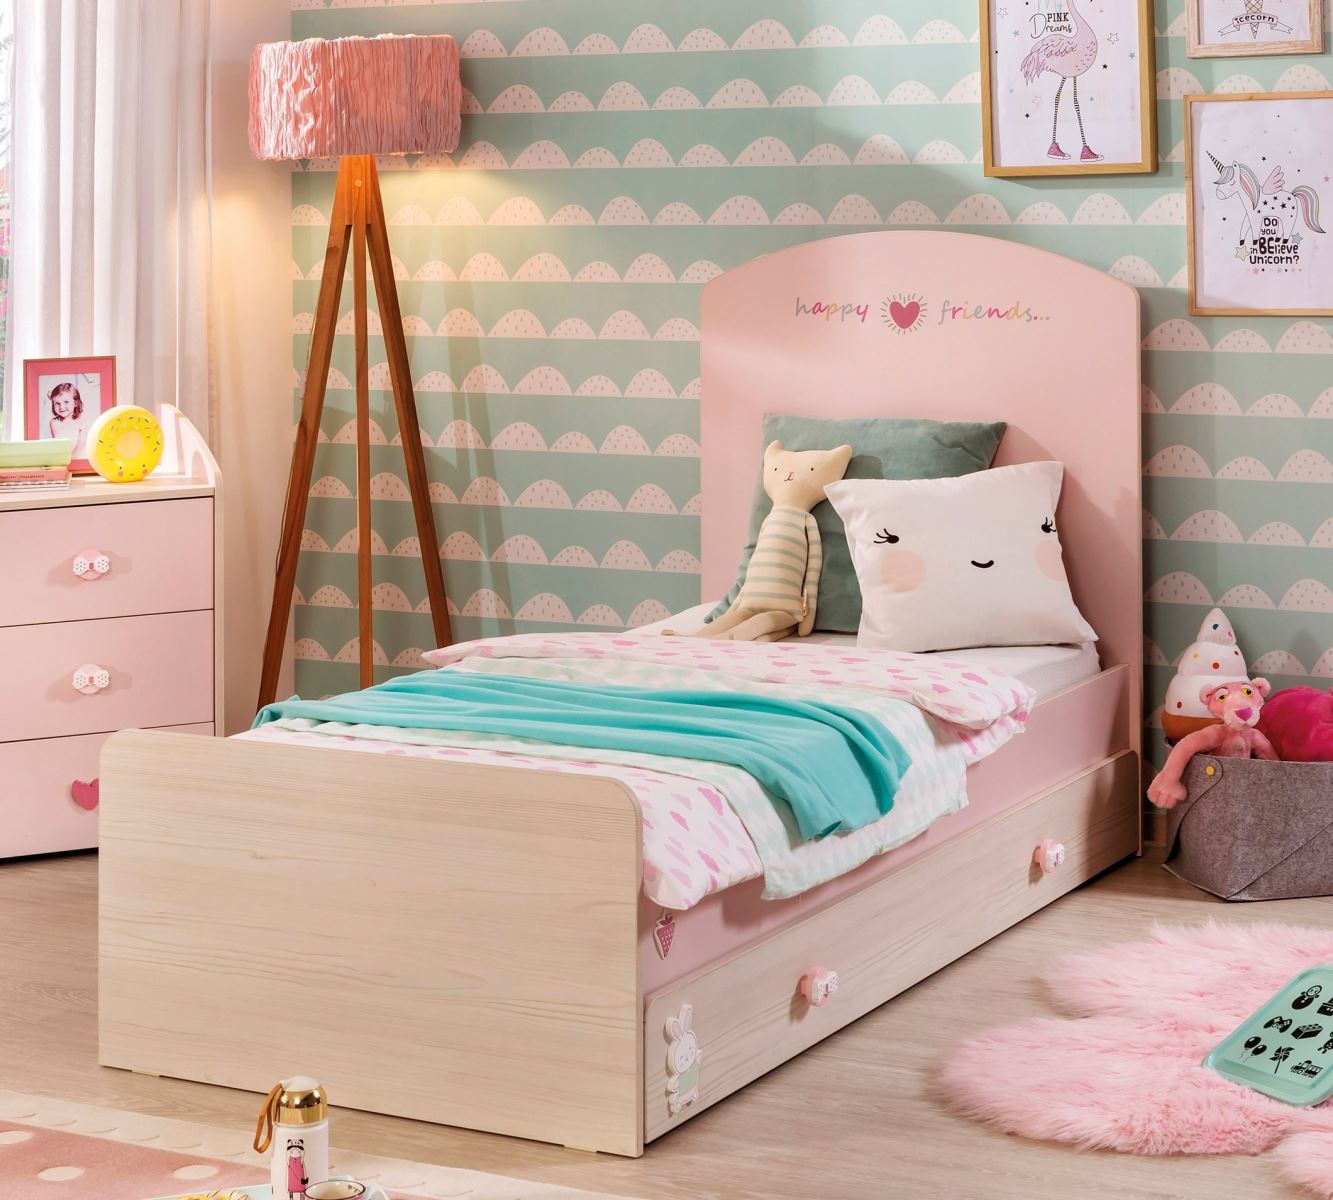 Một số mẫu giường ngủ cho bé gái màu hồng phấn